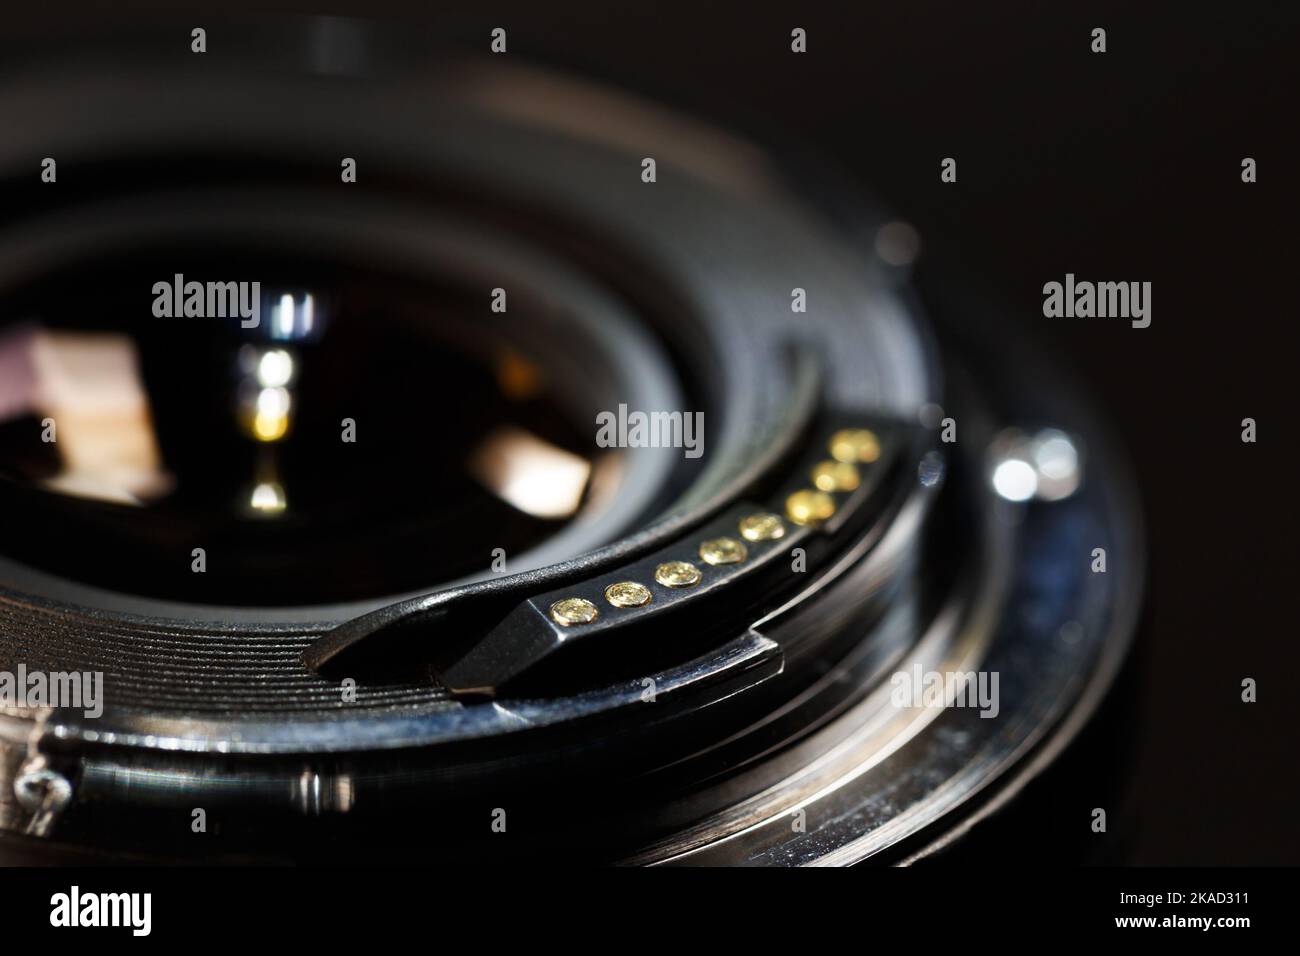 Die Rückseite eines modernen Objektivs mit Kontakten am Bajonett. Makrofotografie vor einem dunklen Hintergrund mit geringer Schärfentiefe Stockfoto